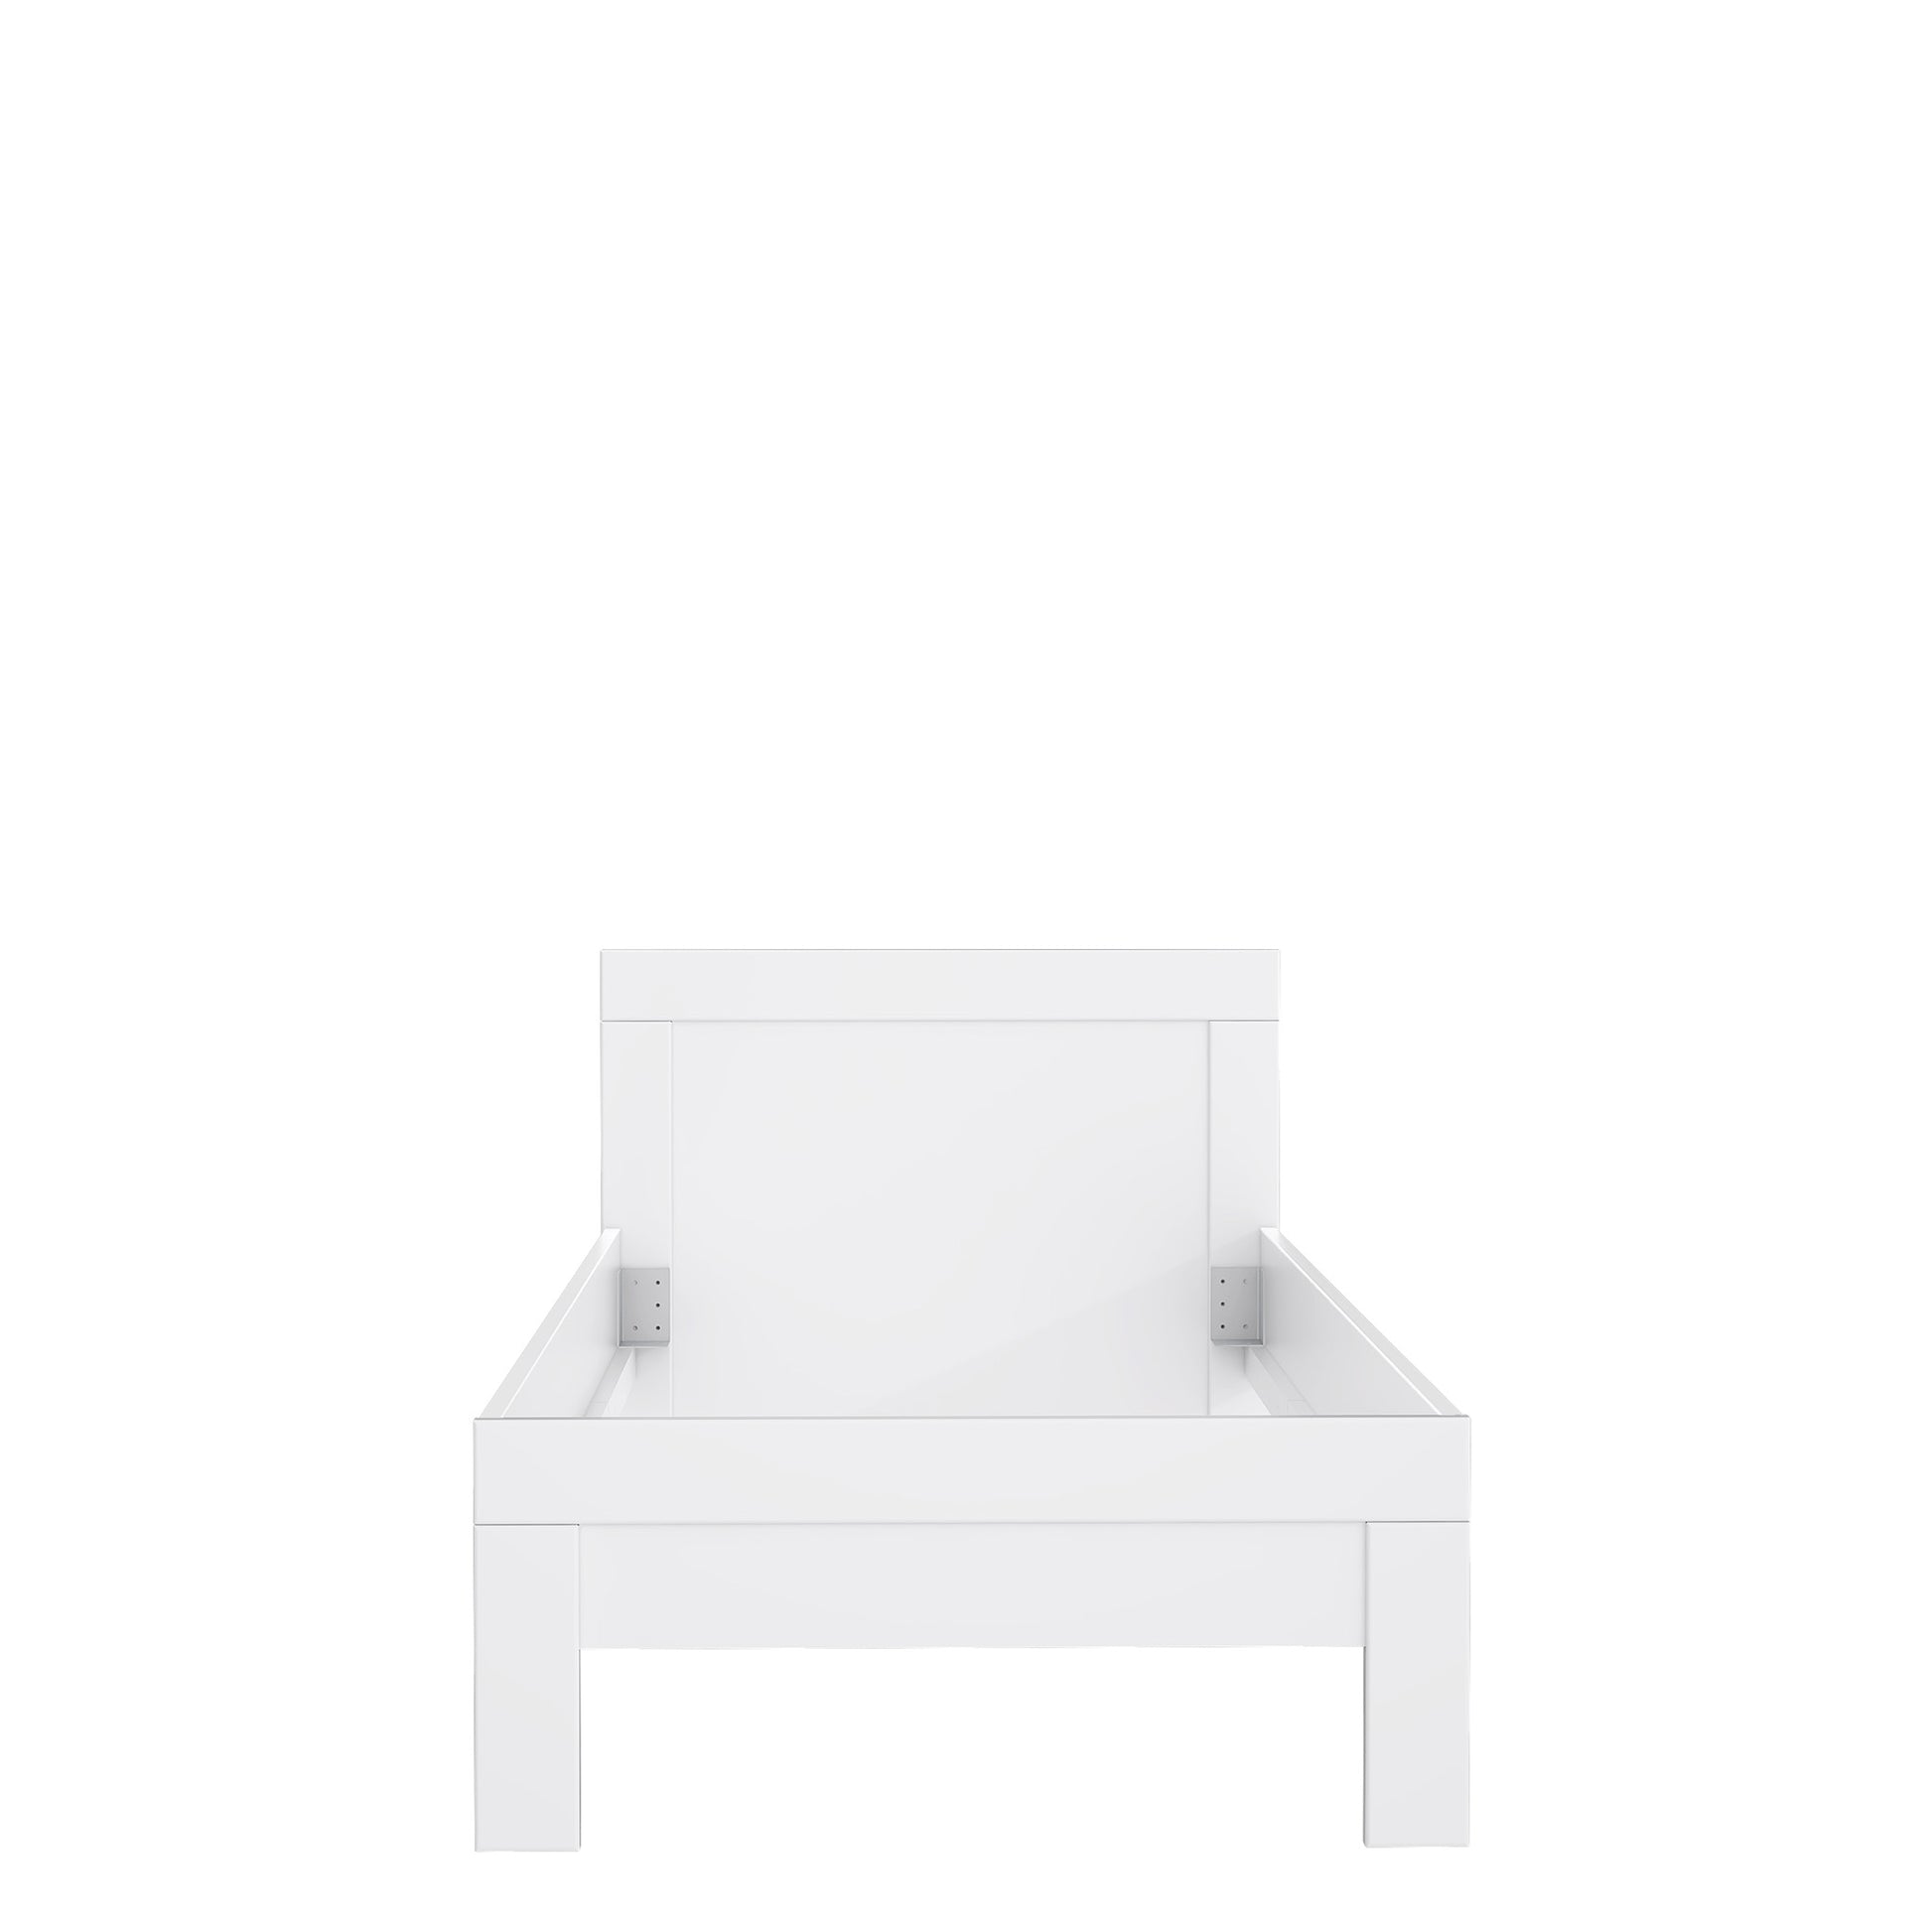 Łóżko białe jednoosobowe - rama na nóżkach - przód